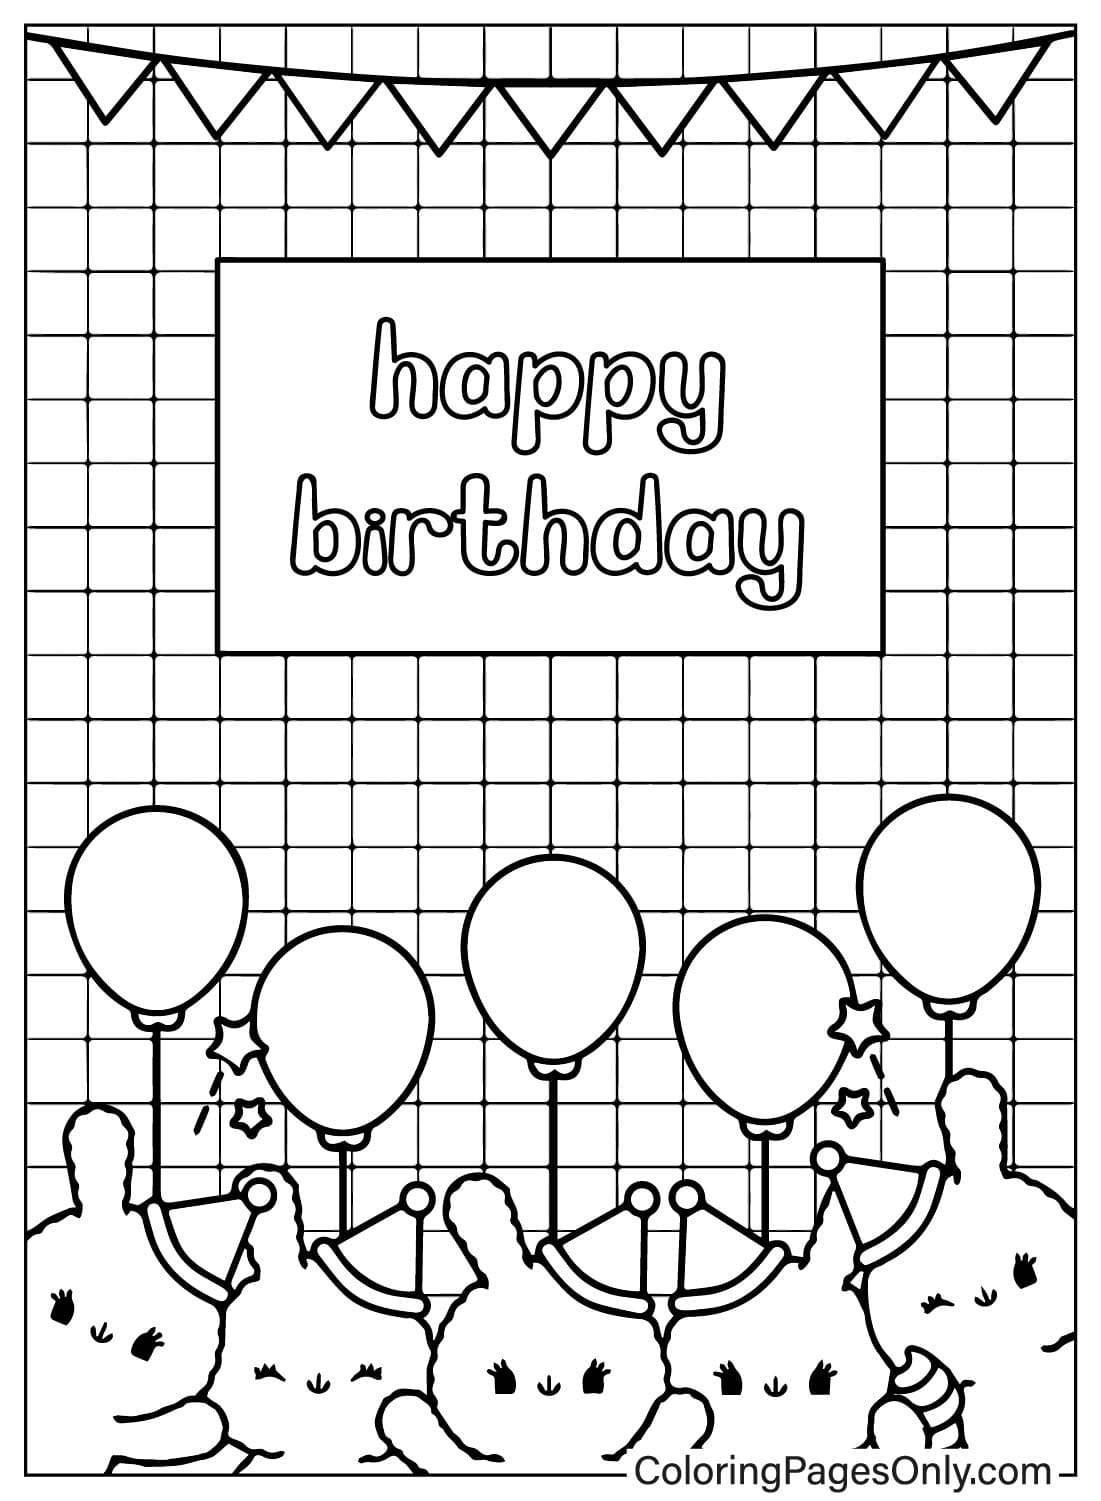 Page de coloriage de carte de joyeux anniversaire imprimable gratuite à partir de la carte de joyeux anniversaire